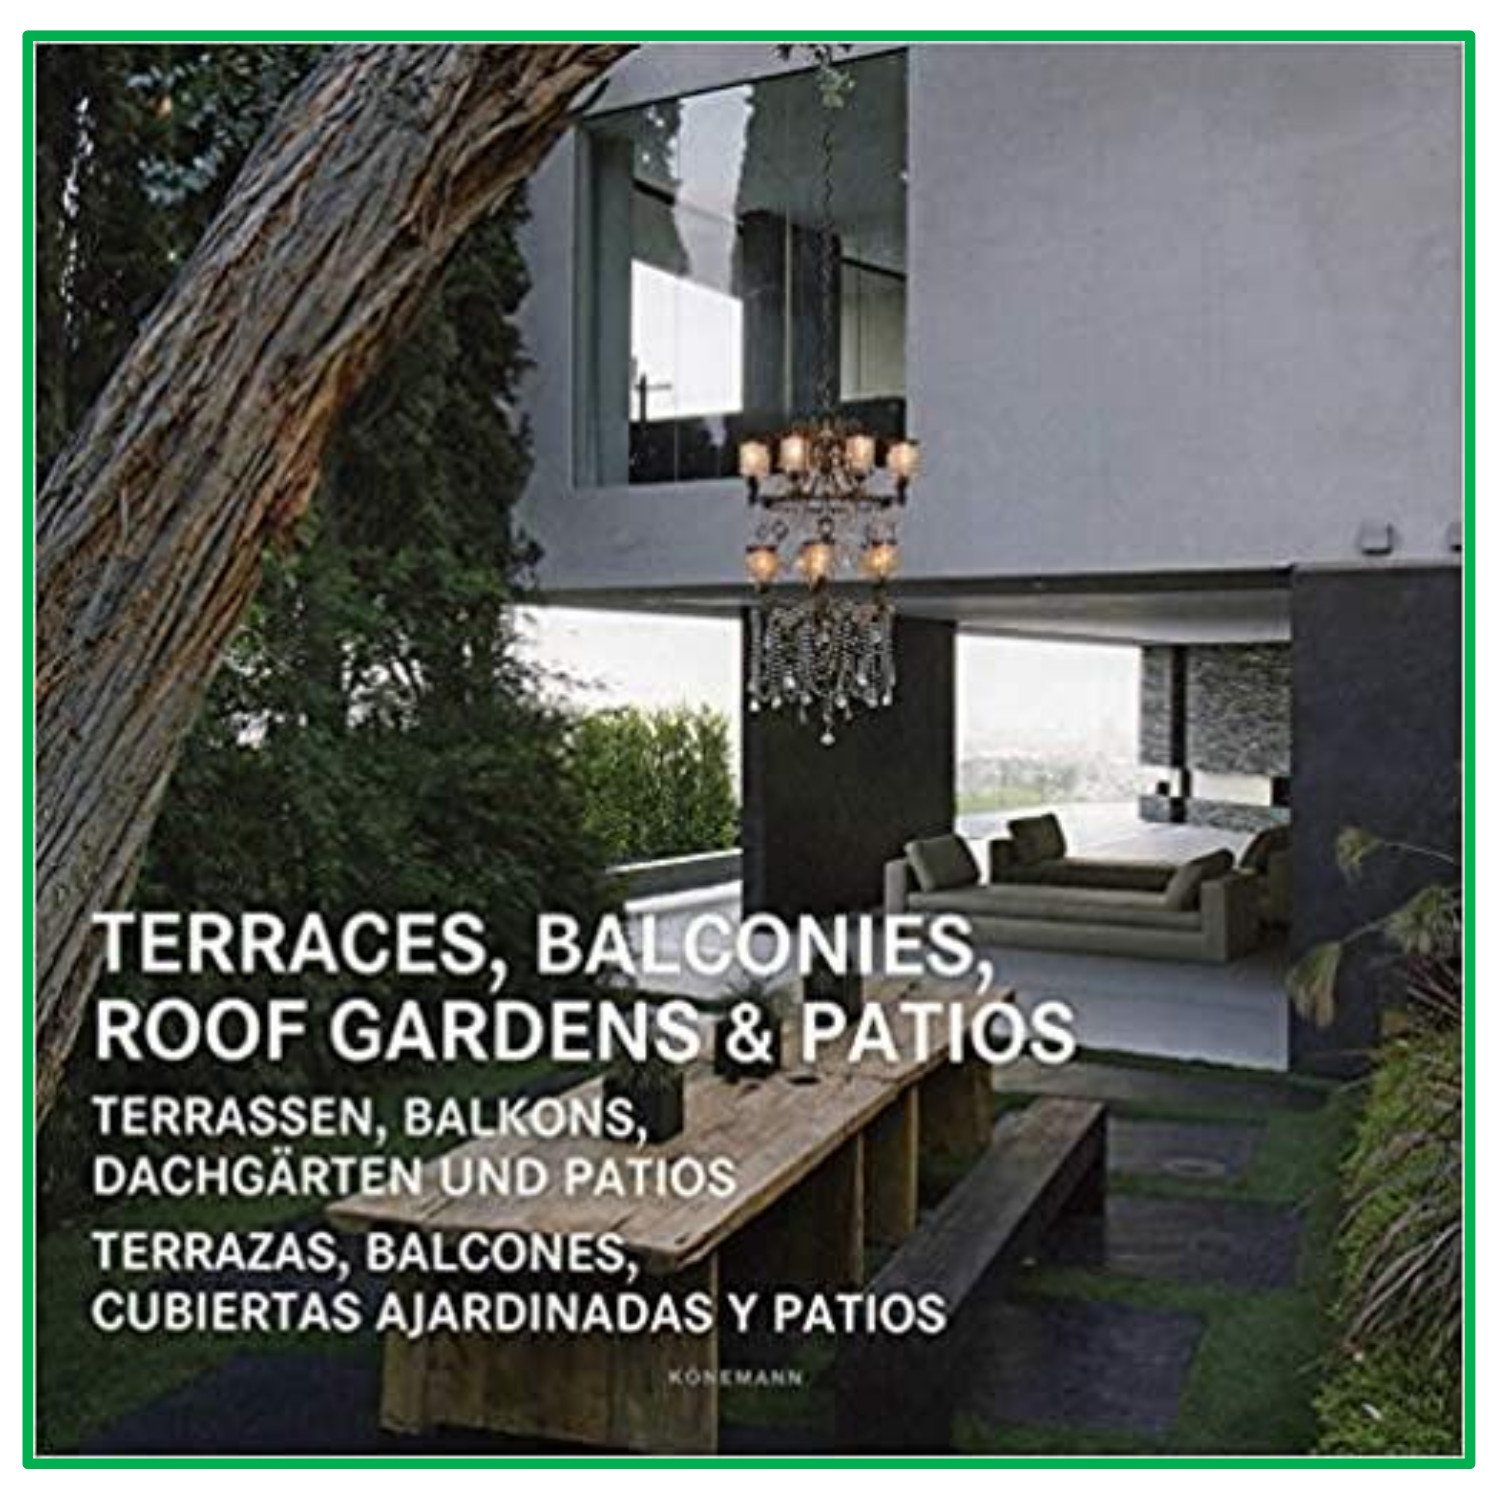 Terraces, Balconies, Roof Gardens & Patios (Mimarlık: Teras, balkon, çatı bahçeleri ve verandalar)